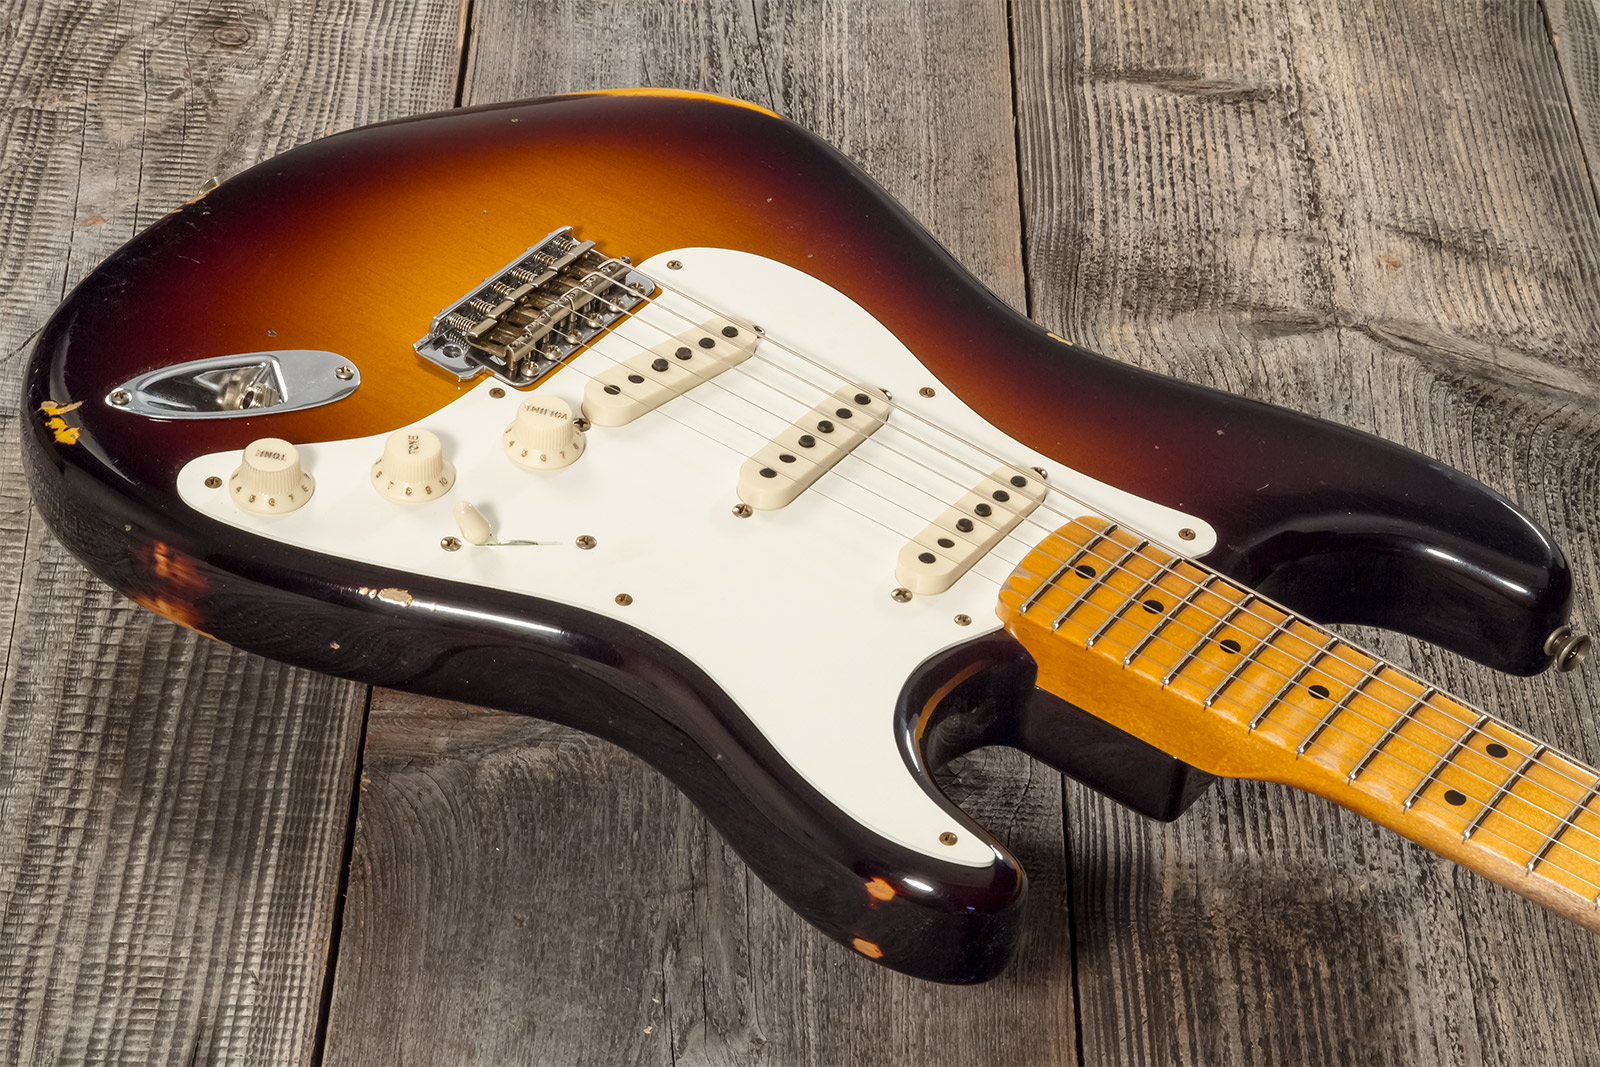 Fender Custom Shop Strat 1957 3s Trem Mn #cz571791 - Relic Wide Fade 2-color Sunburst - Str shape electric guitar - Variation 2